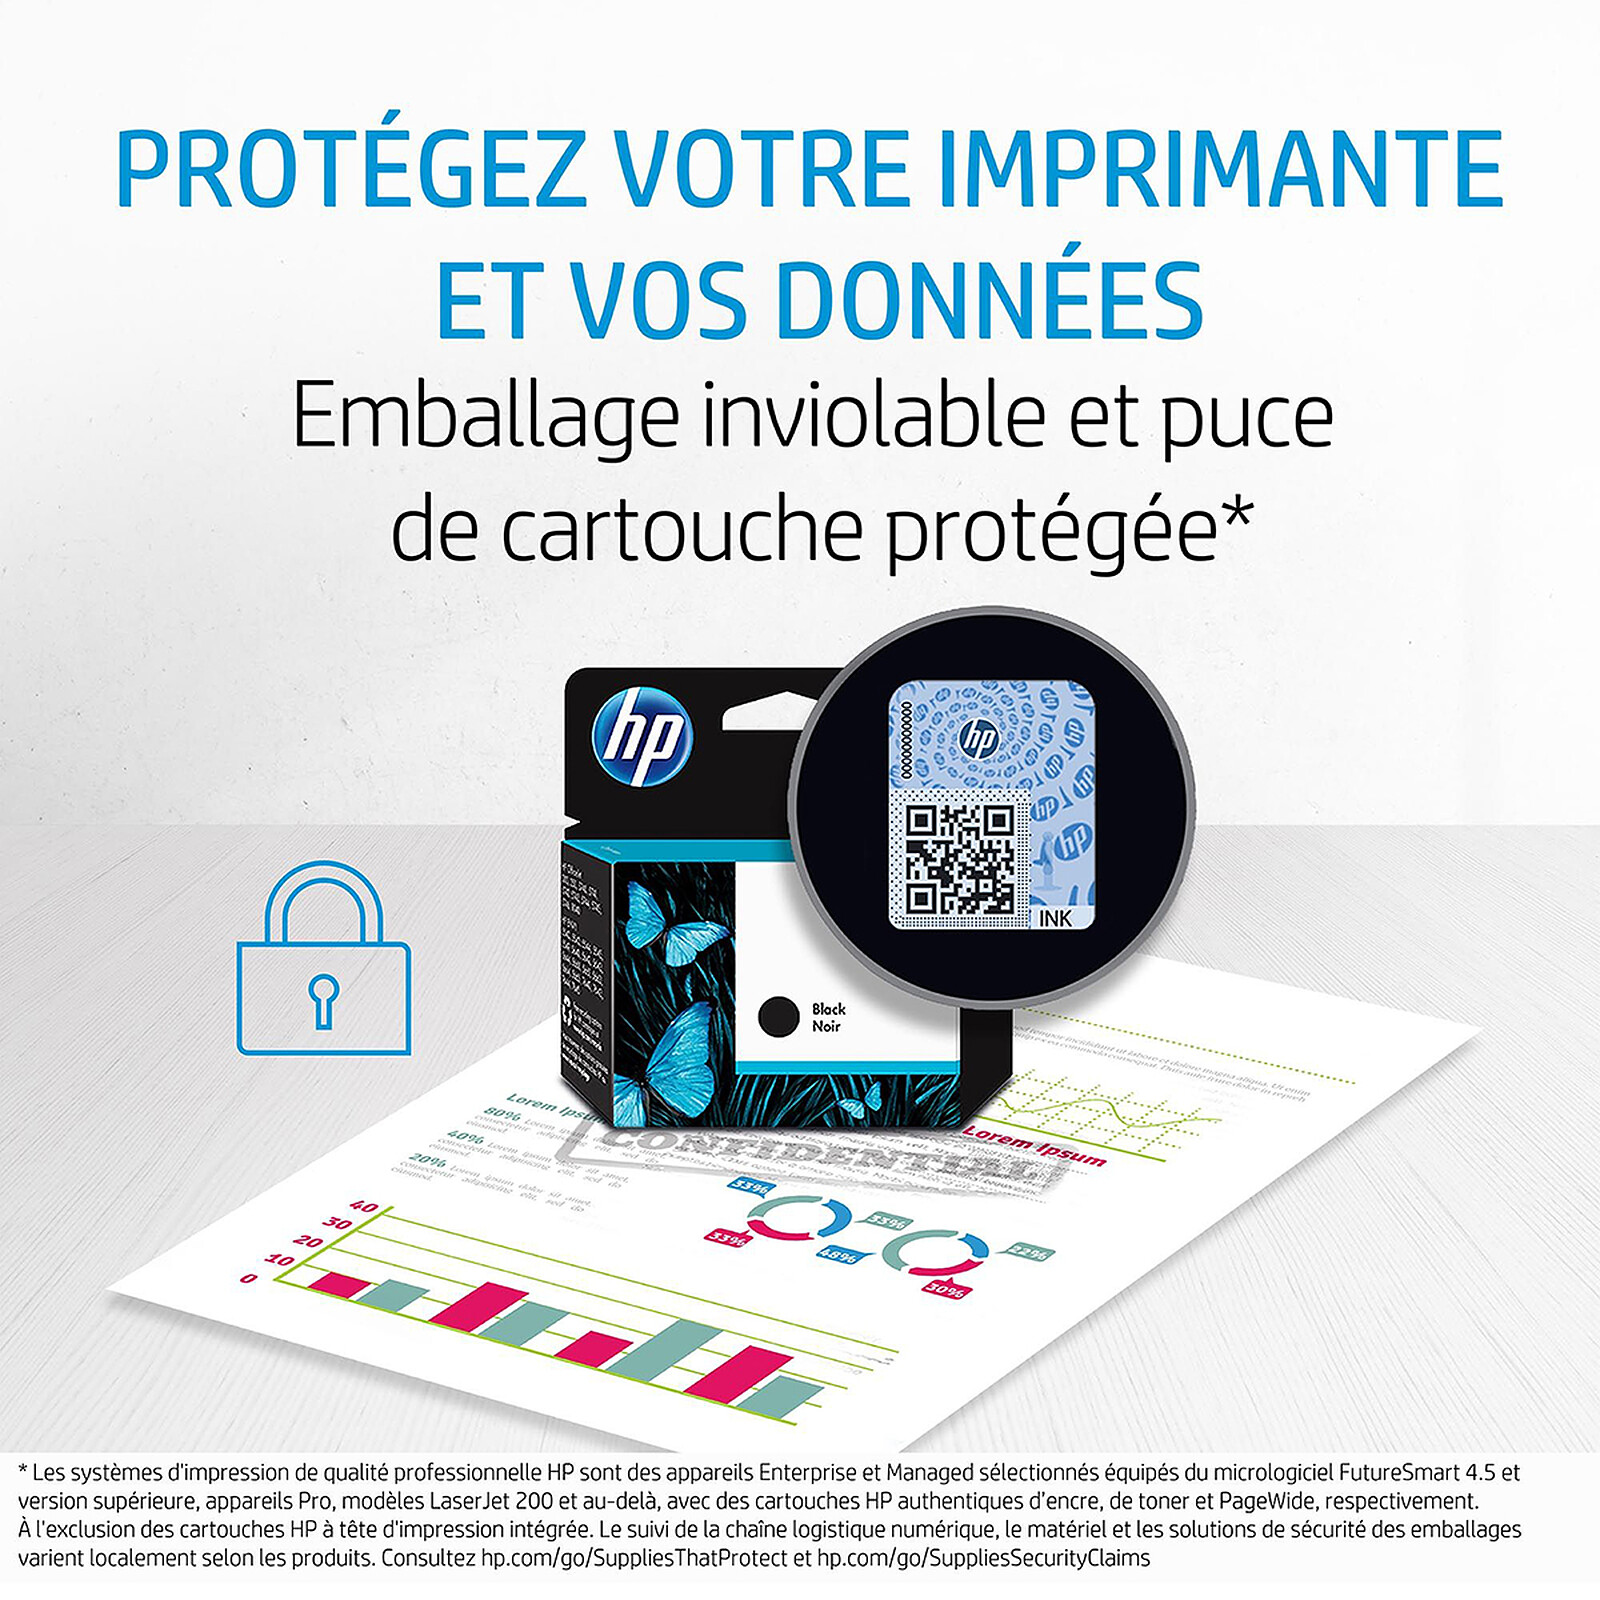 COMETE - 305XL - 2 cartouches compatibles HP 305 XL Sans Niveau d'encre -  Marque française - Cartouche imprimante - LDLC